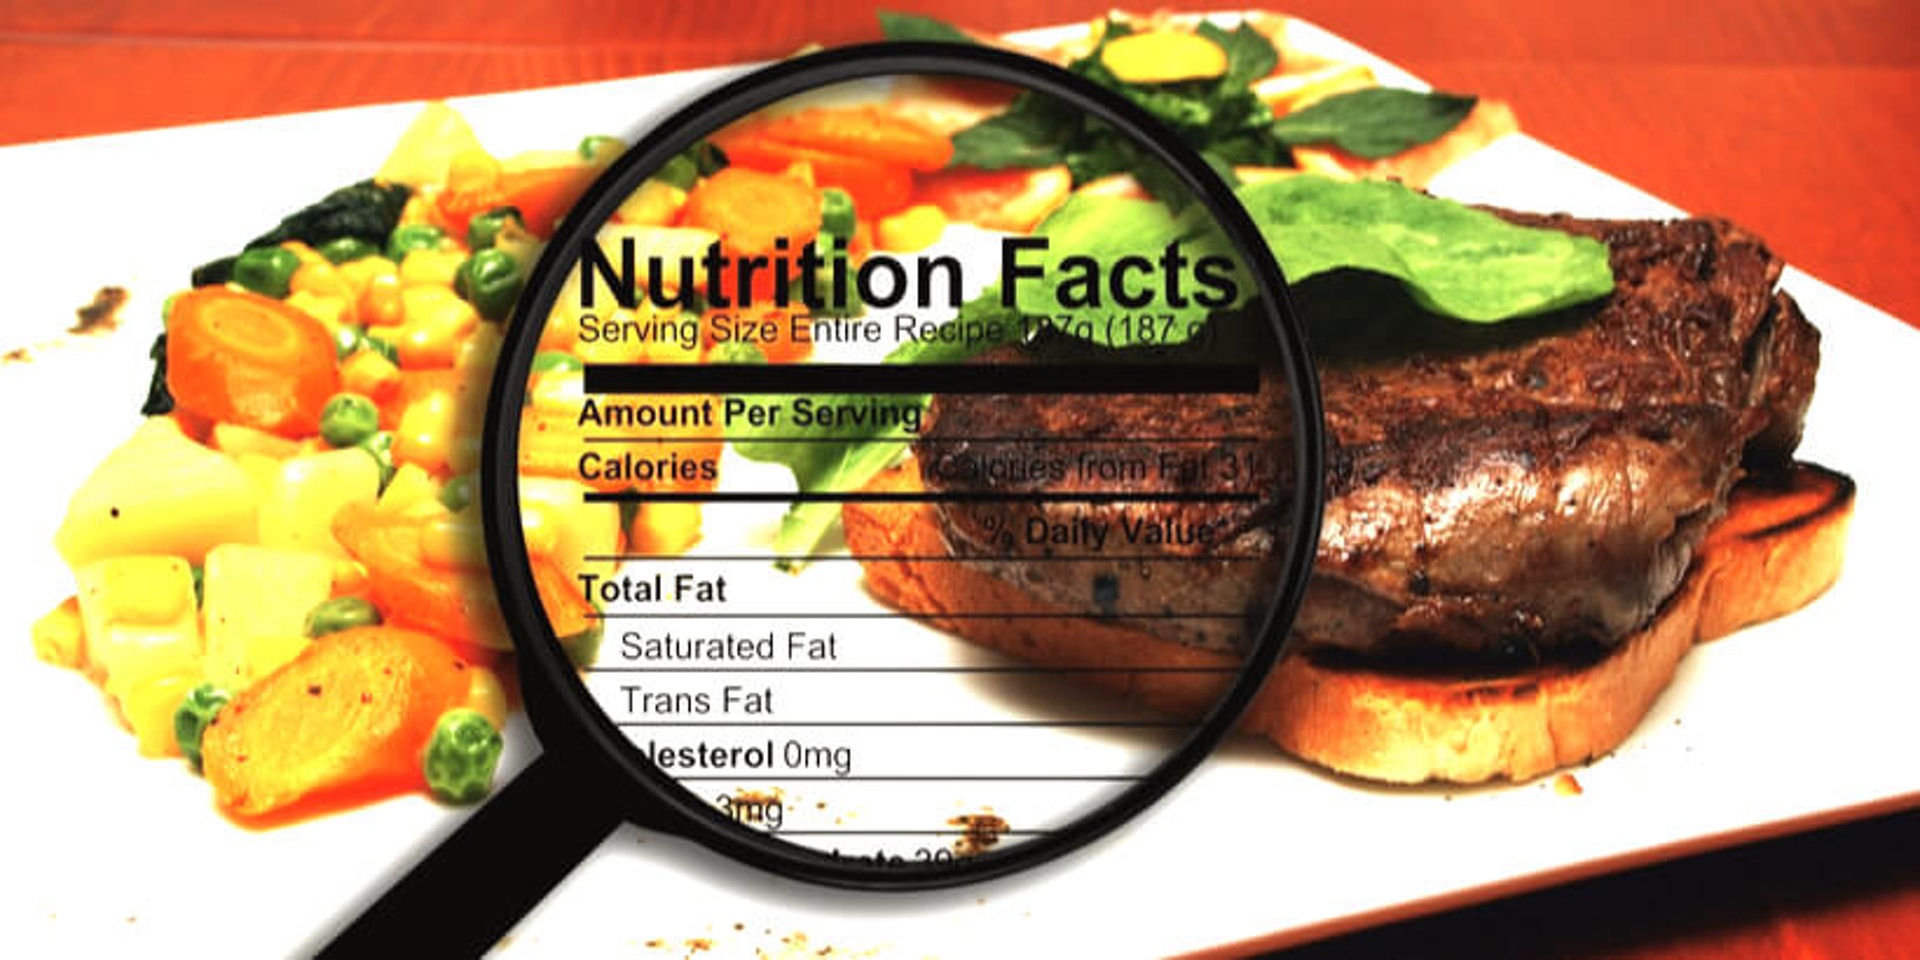 進食前先了解該食物的碳水、蛋白質、油脂、糖份、纖維比例 (圖片: FreePik)